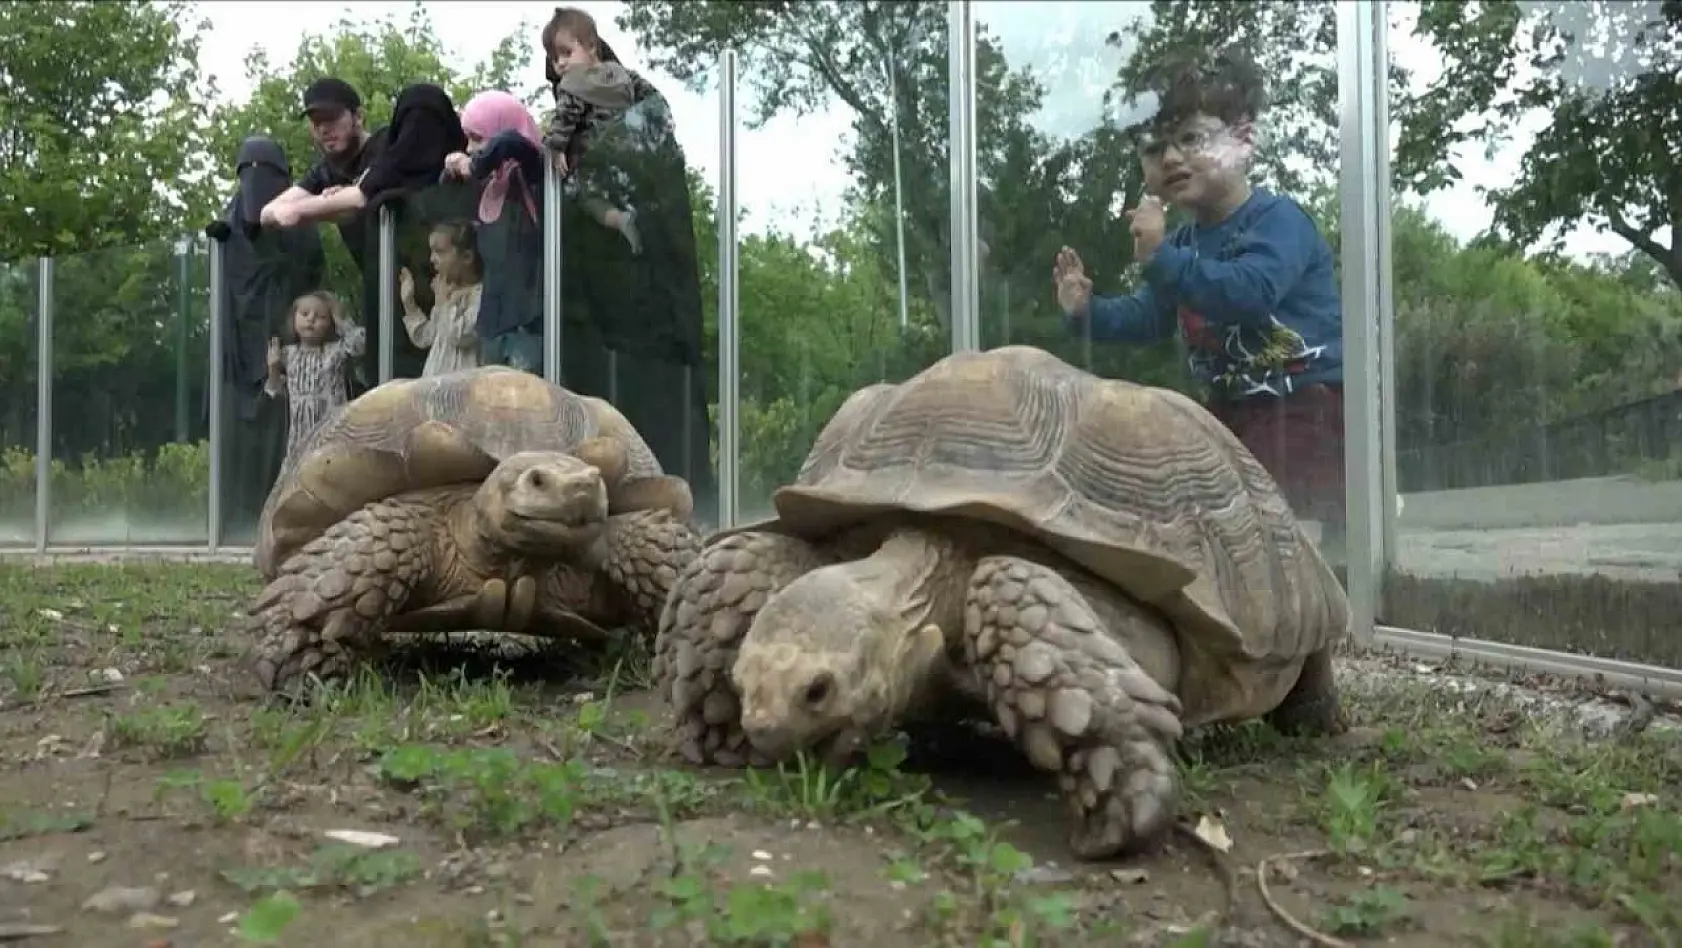 Zoopark'taki kaplumbağalara Dünya Kaplumbağa Günü'nde ziyafet